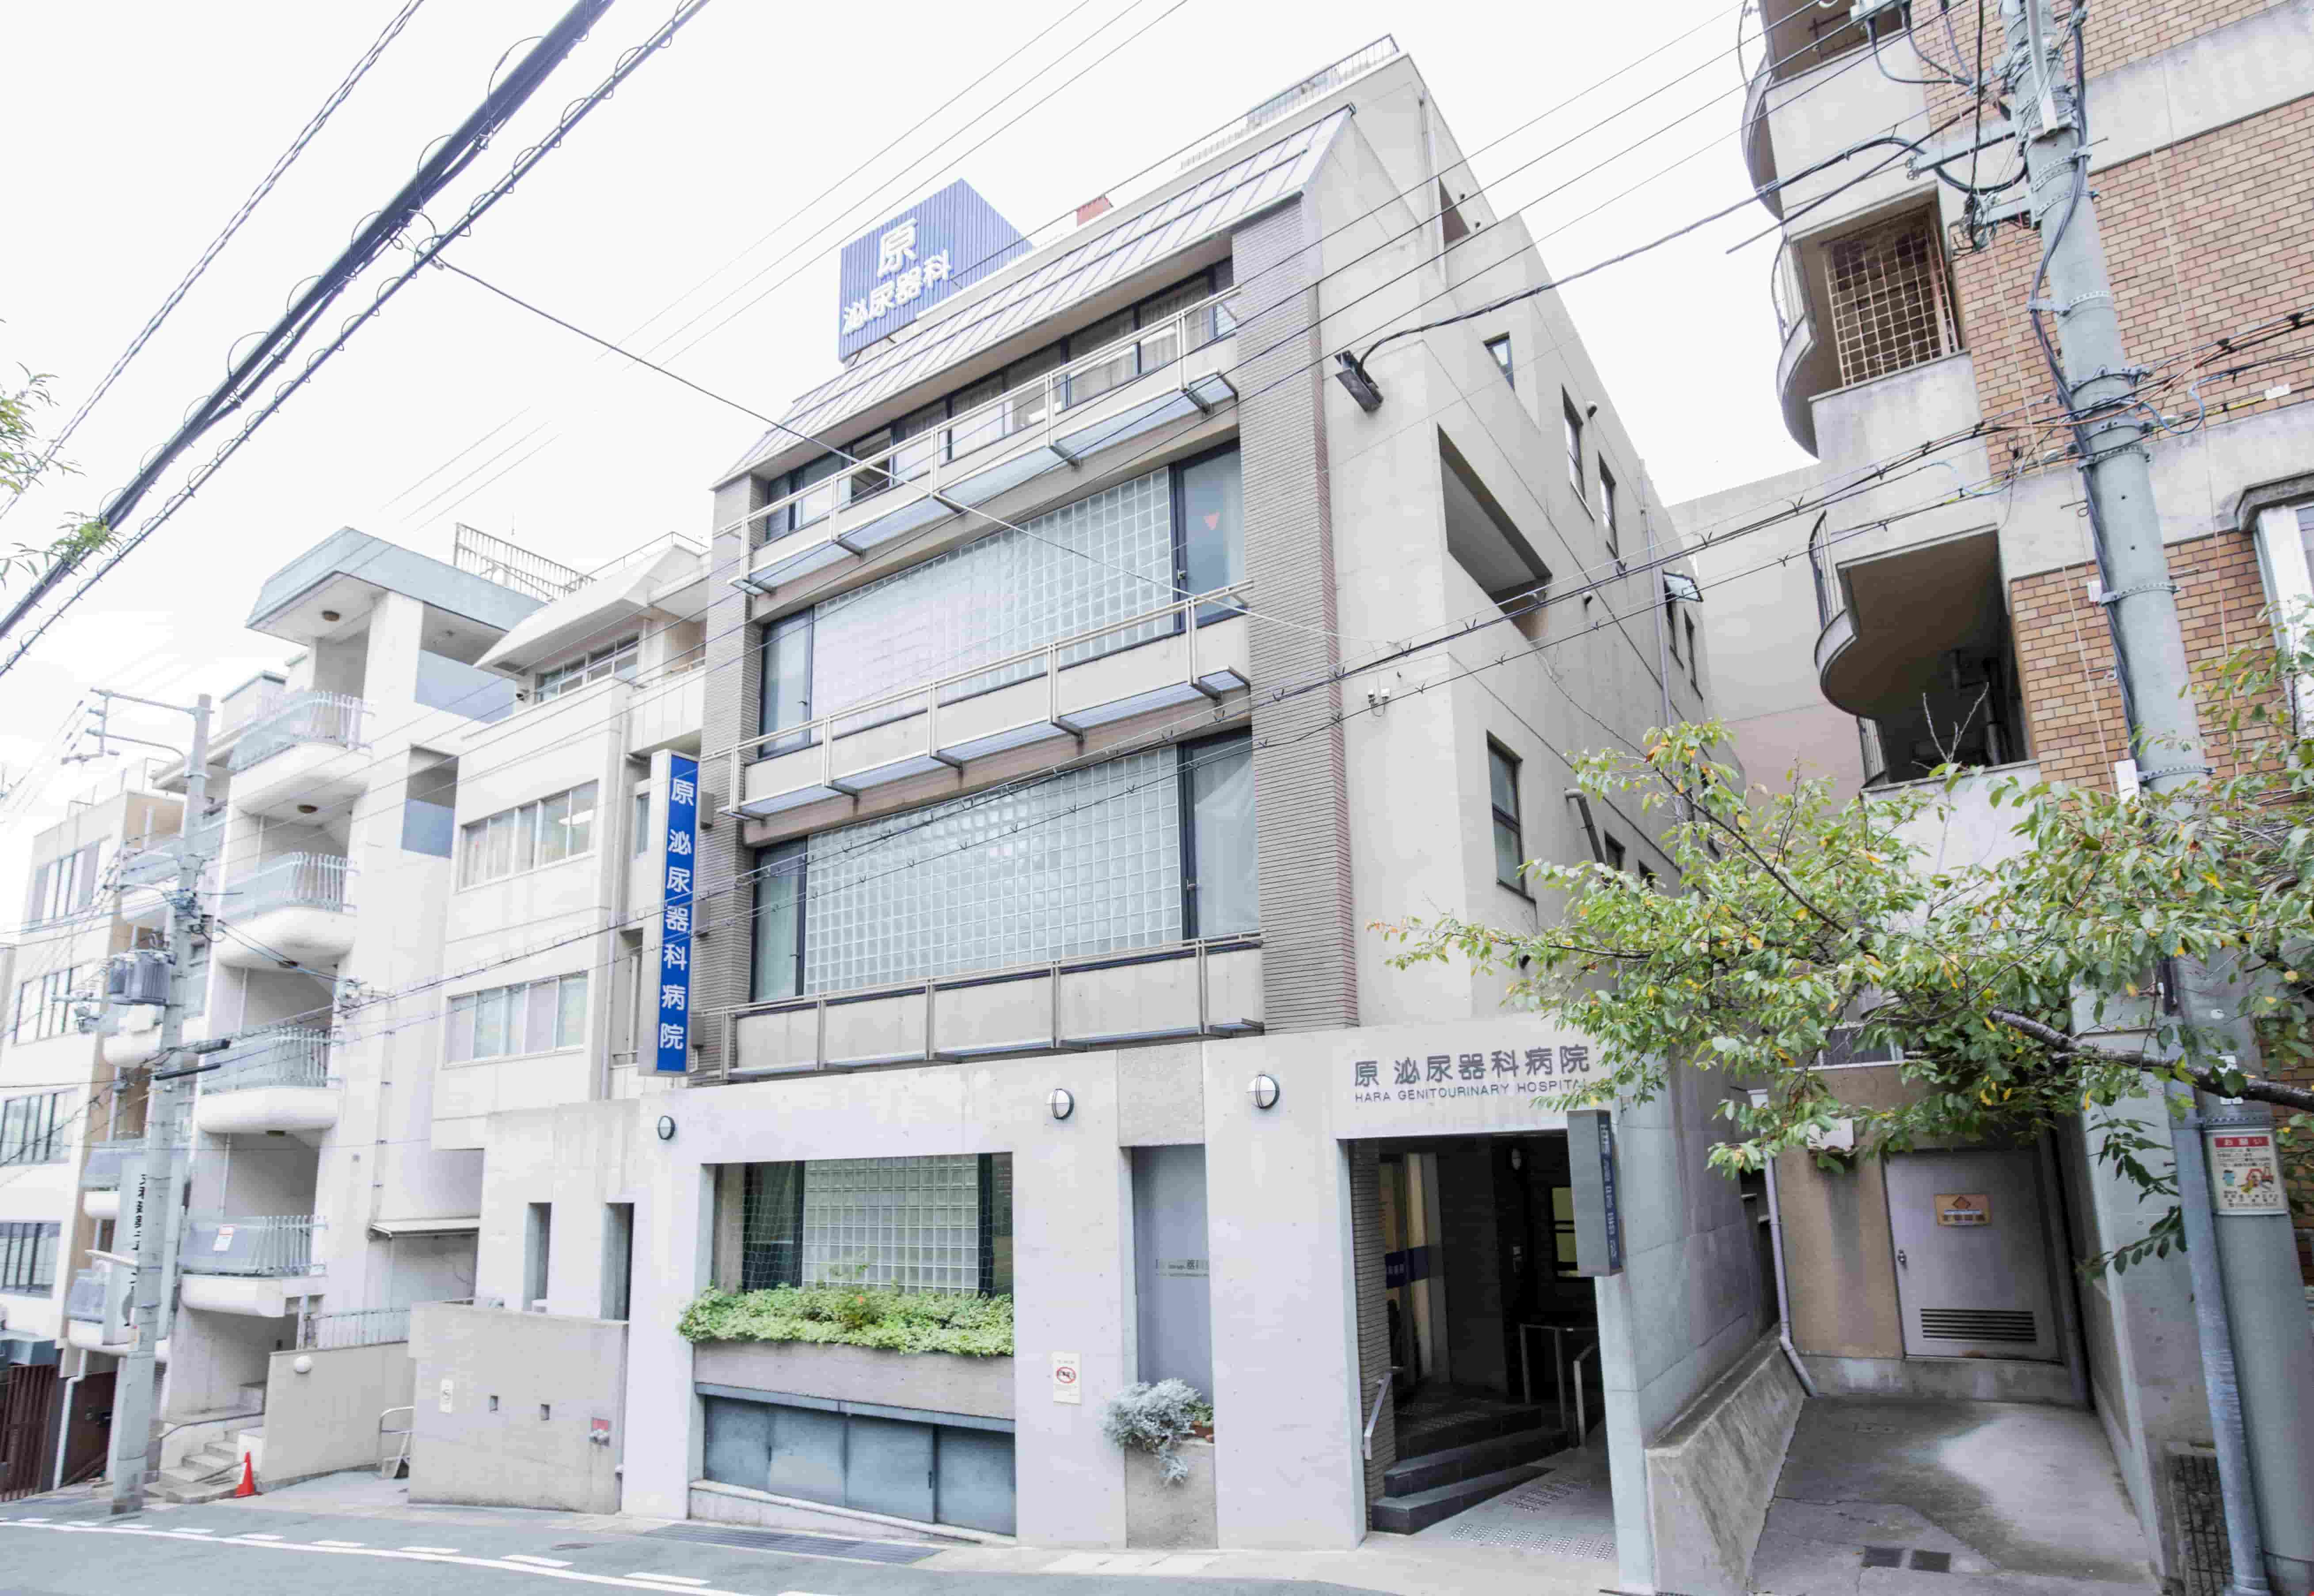 病院概要 バリアフリー情報 原泌尿器科病院 神戸市